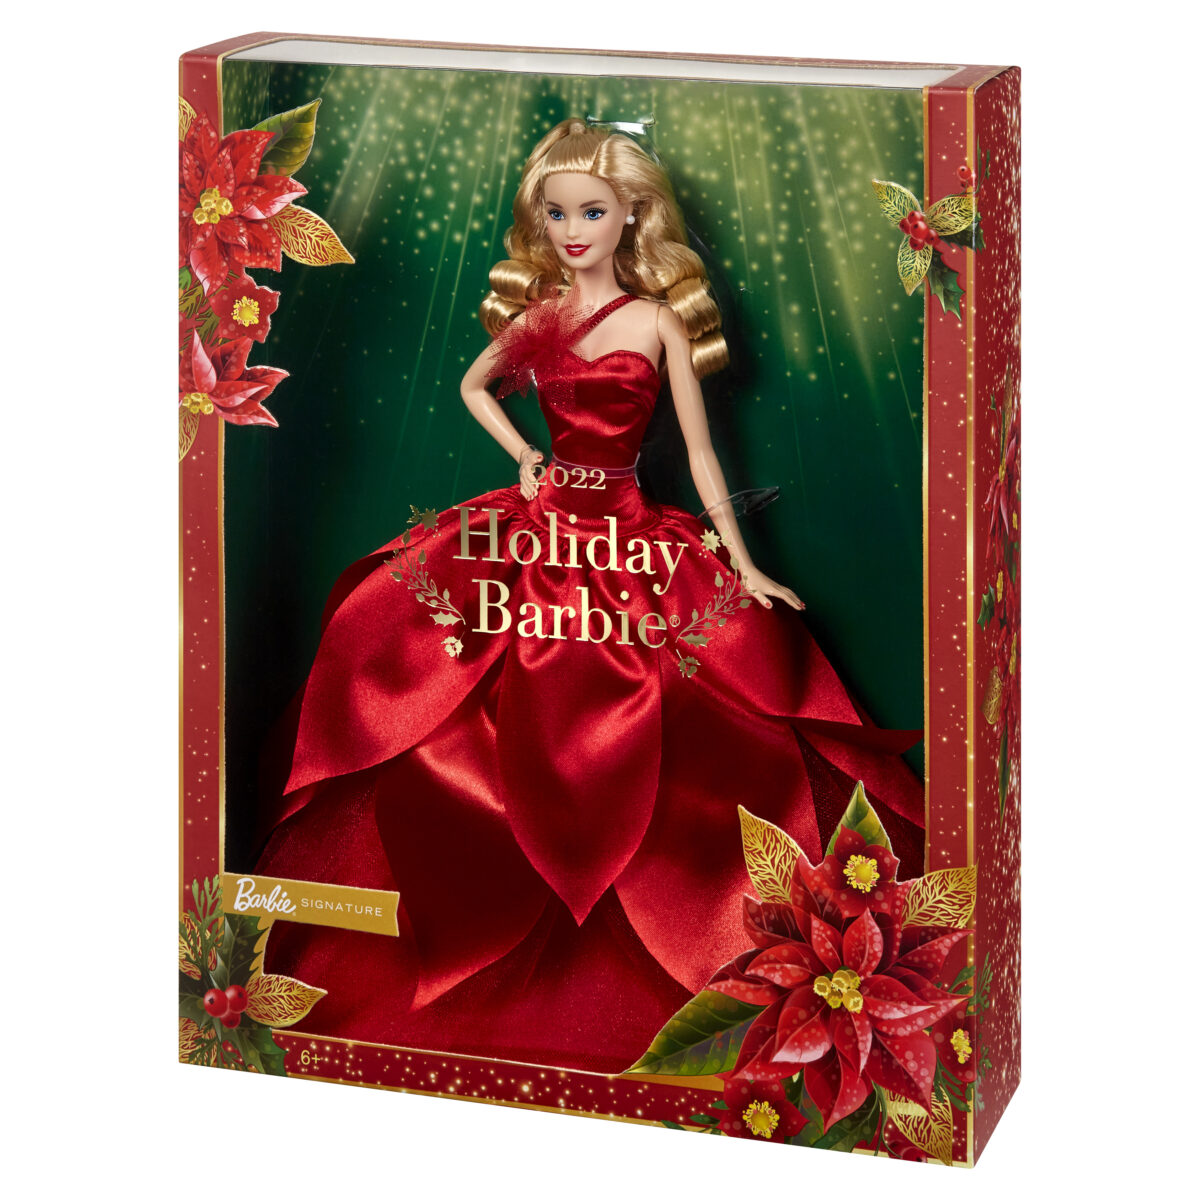 Confezione regalo Bambola Barbie Magia delle Feste 2022 bionda capelli lunghi abito color rosso Natale e Capodanno 2023